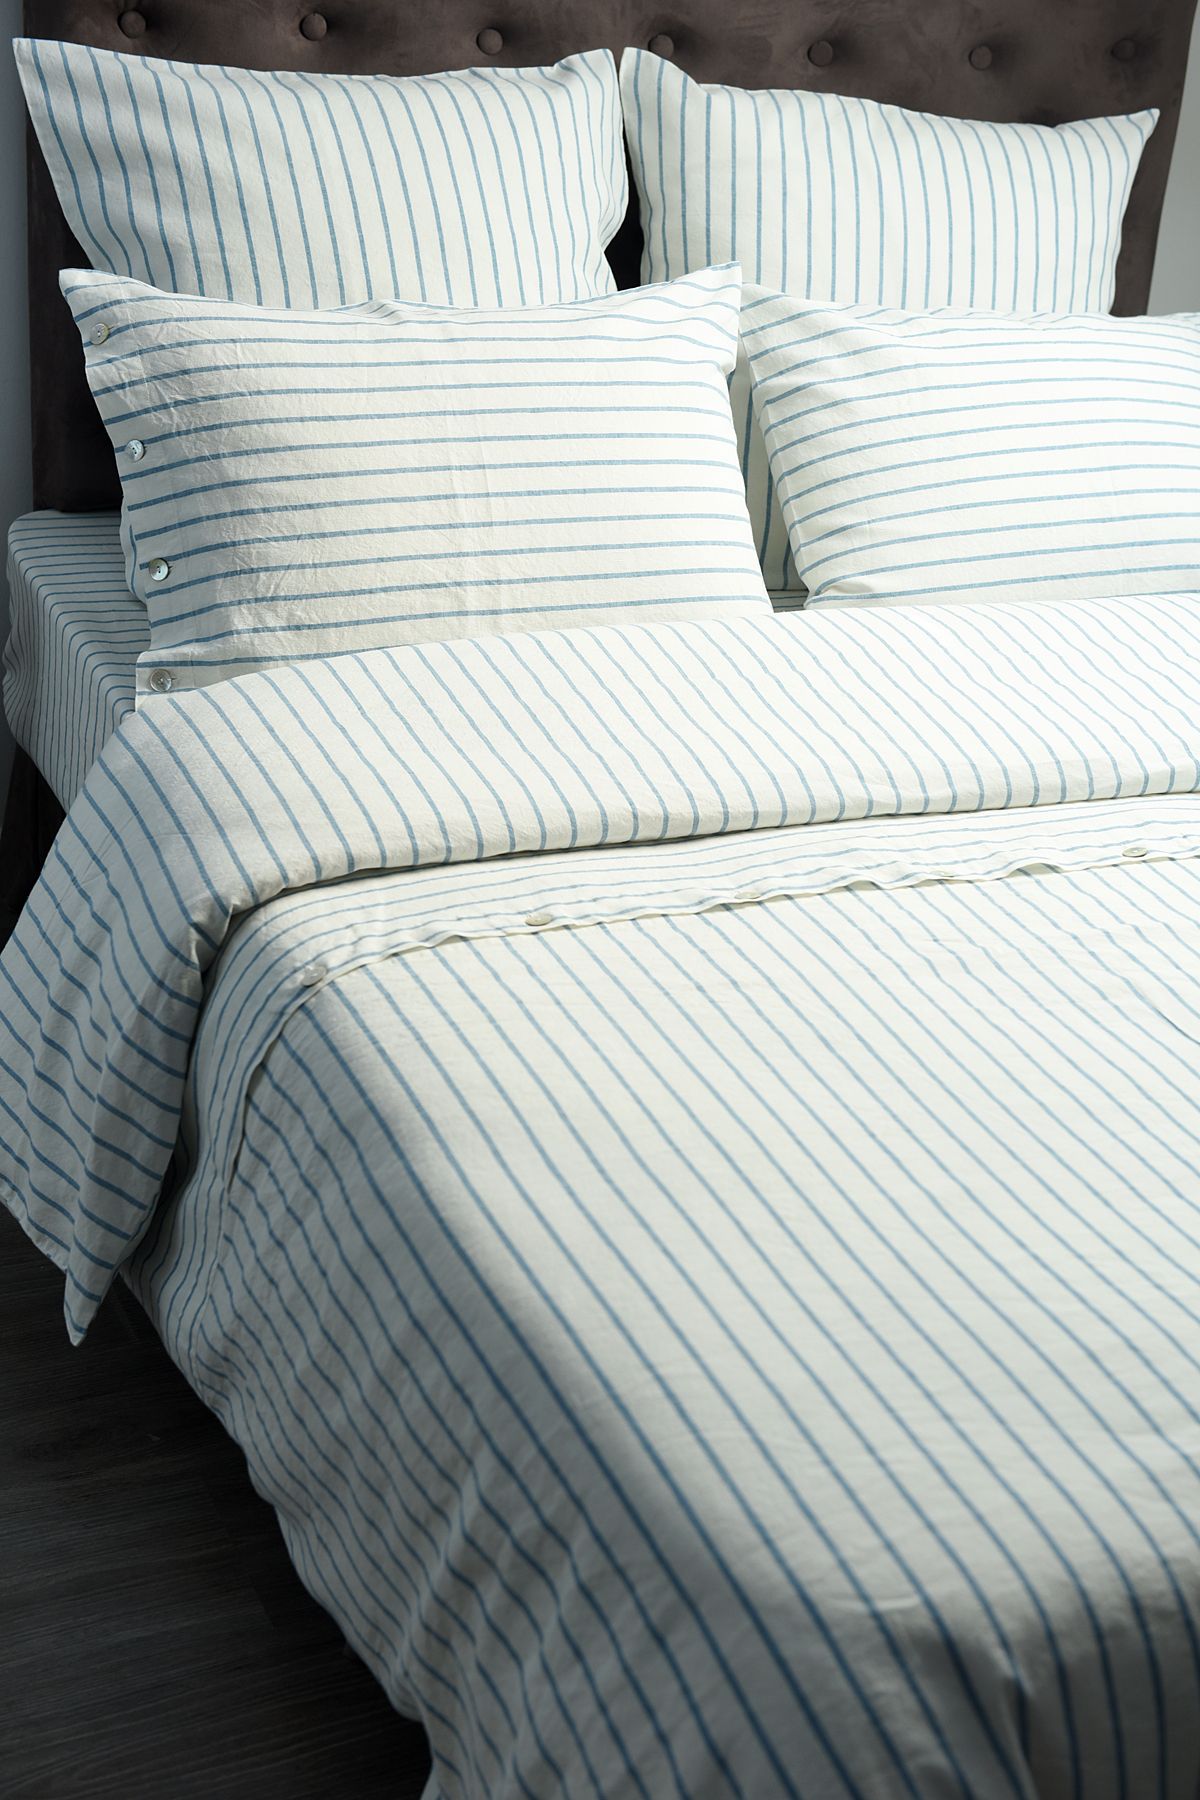 Льняное постельное белье: КПБ Стиль в составе 55% лен 45% хлопок, цена от  24900 руб. в интернет-магазине LinoRusso